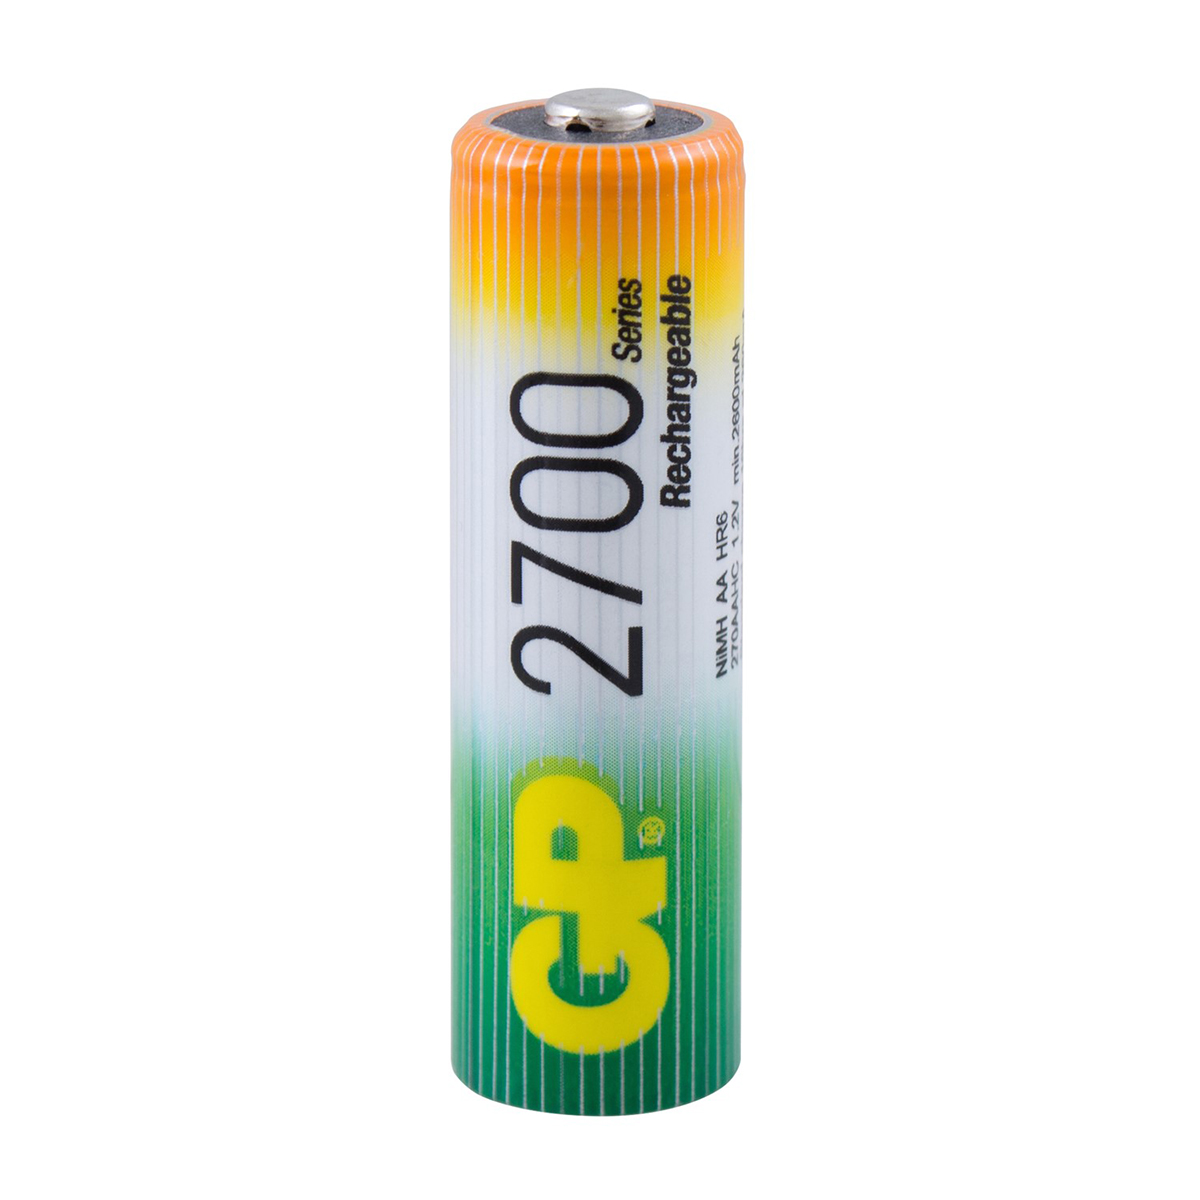 Аккумулятор gp rechargeable 270aahc4/2-2cr6  тип аа, 2700 мач (6 шт. в блистере) (1/6/60)